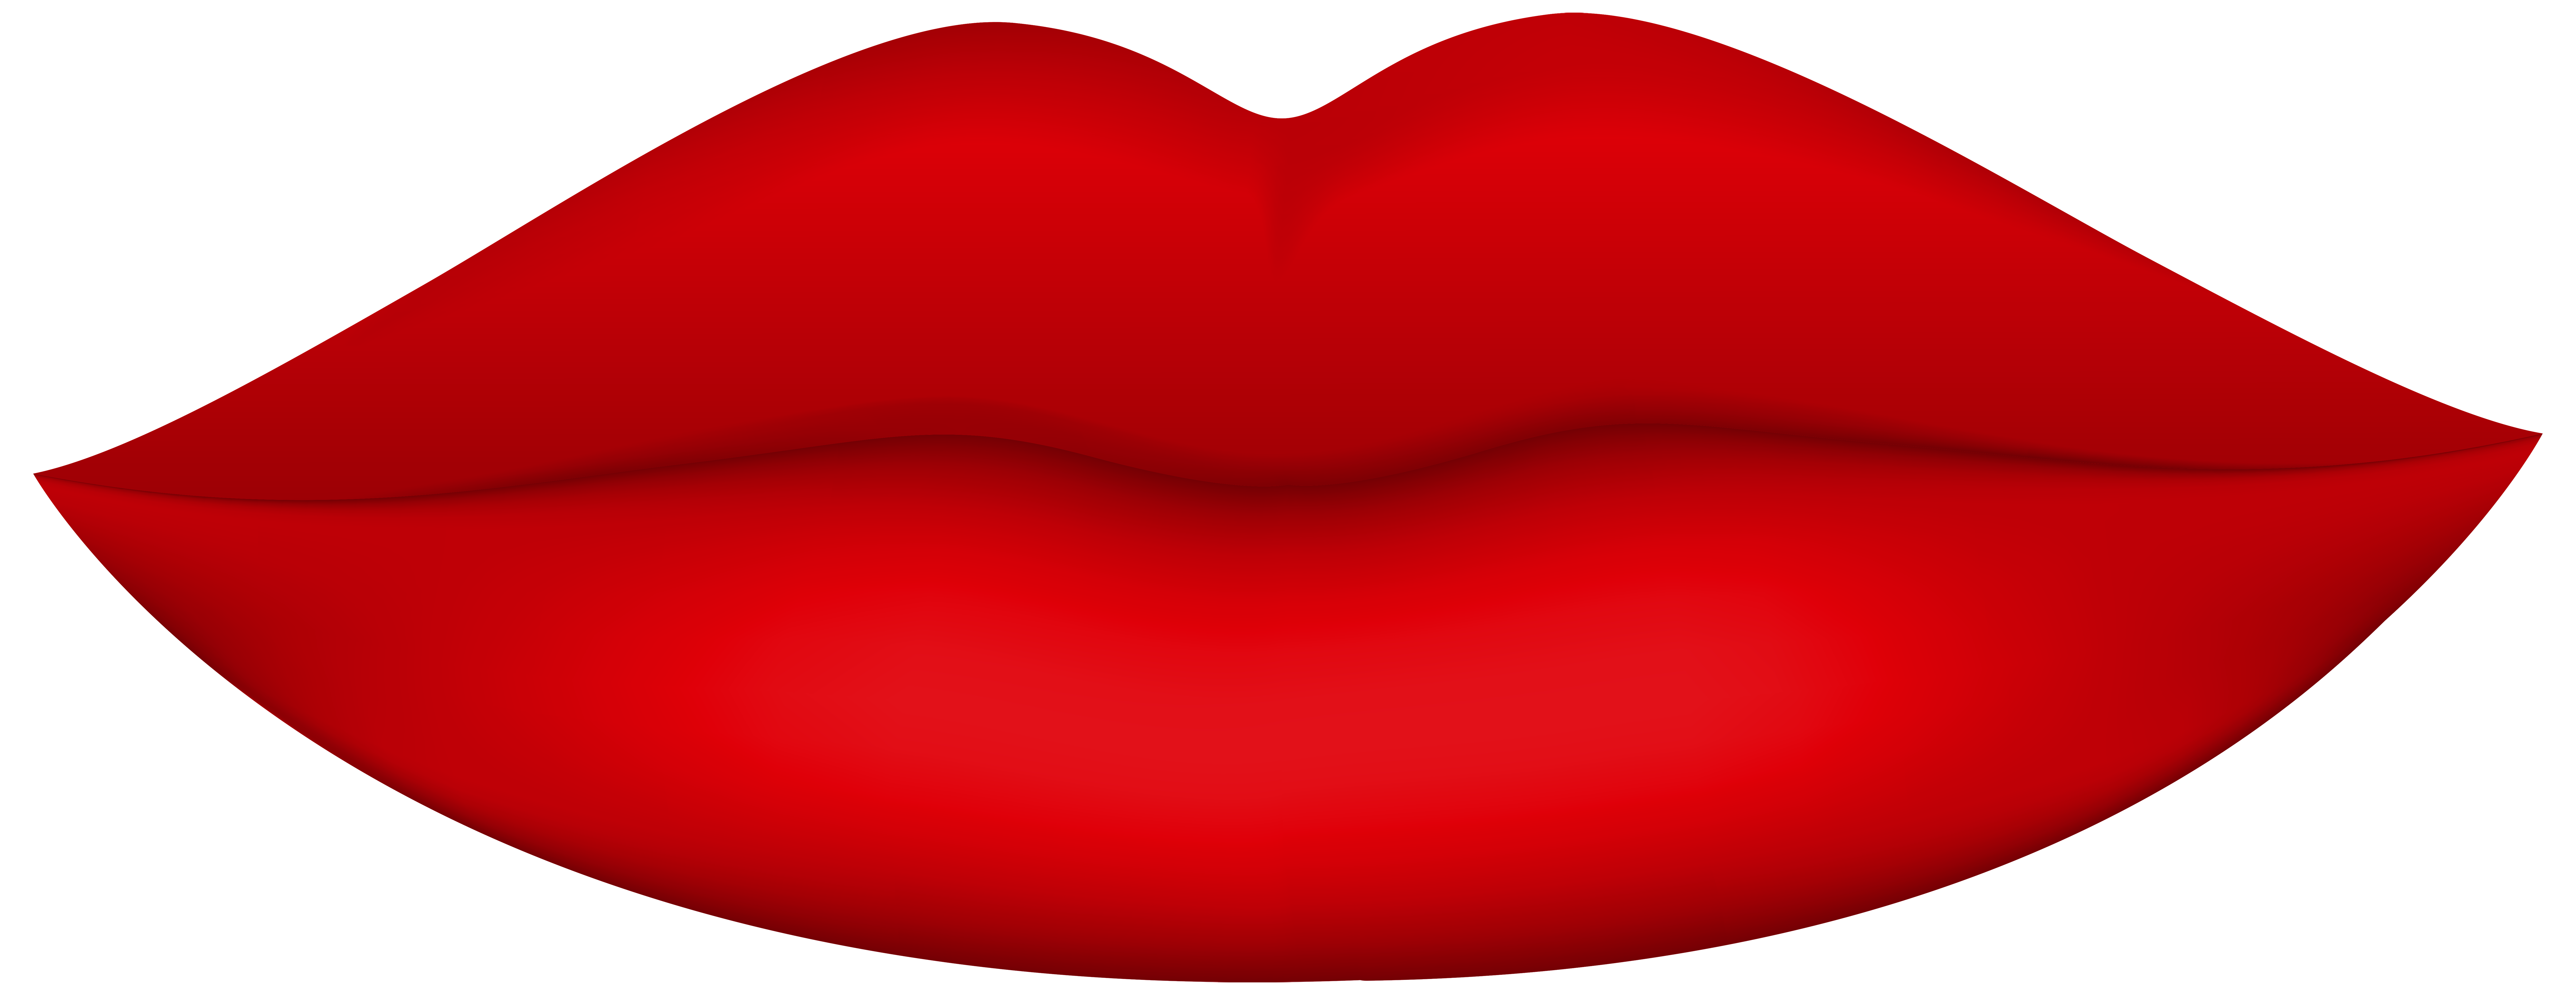 Lips Clipart - Tumundografico